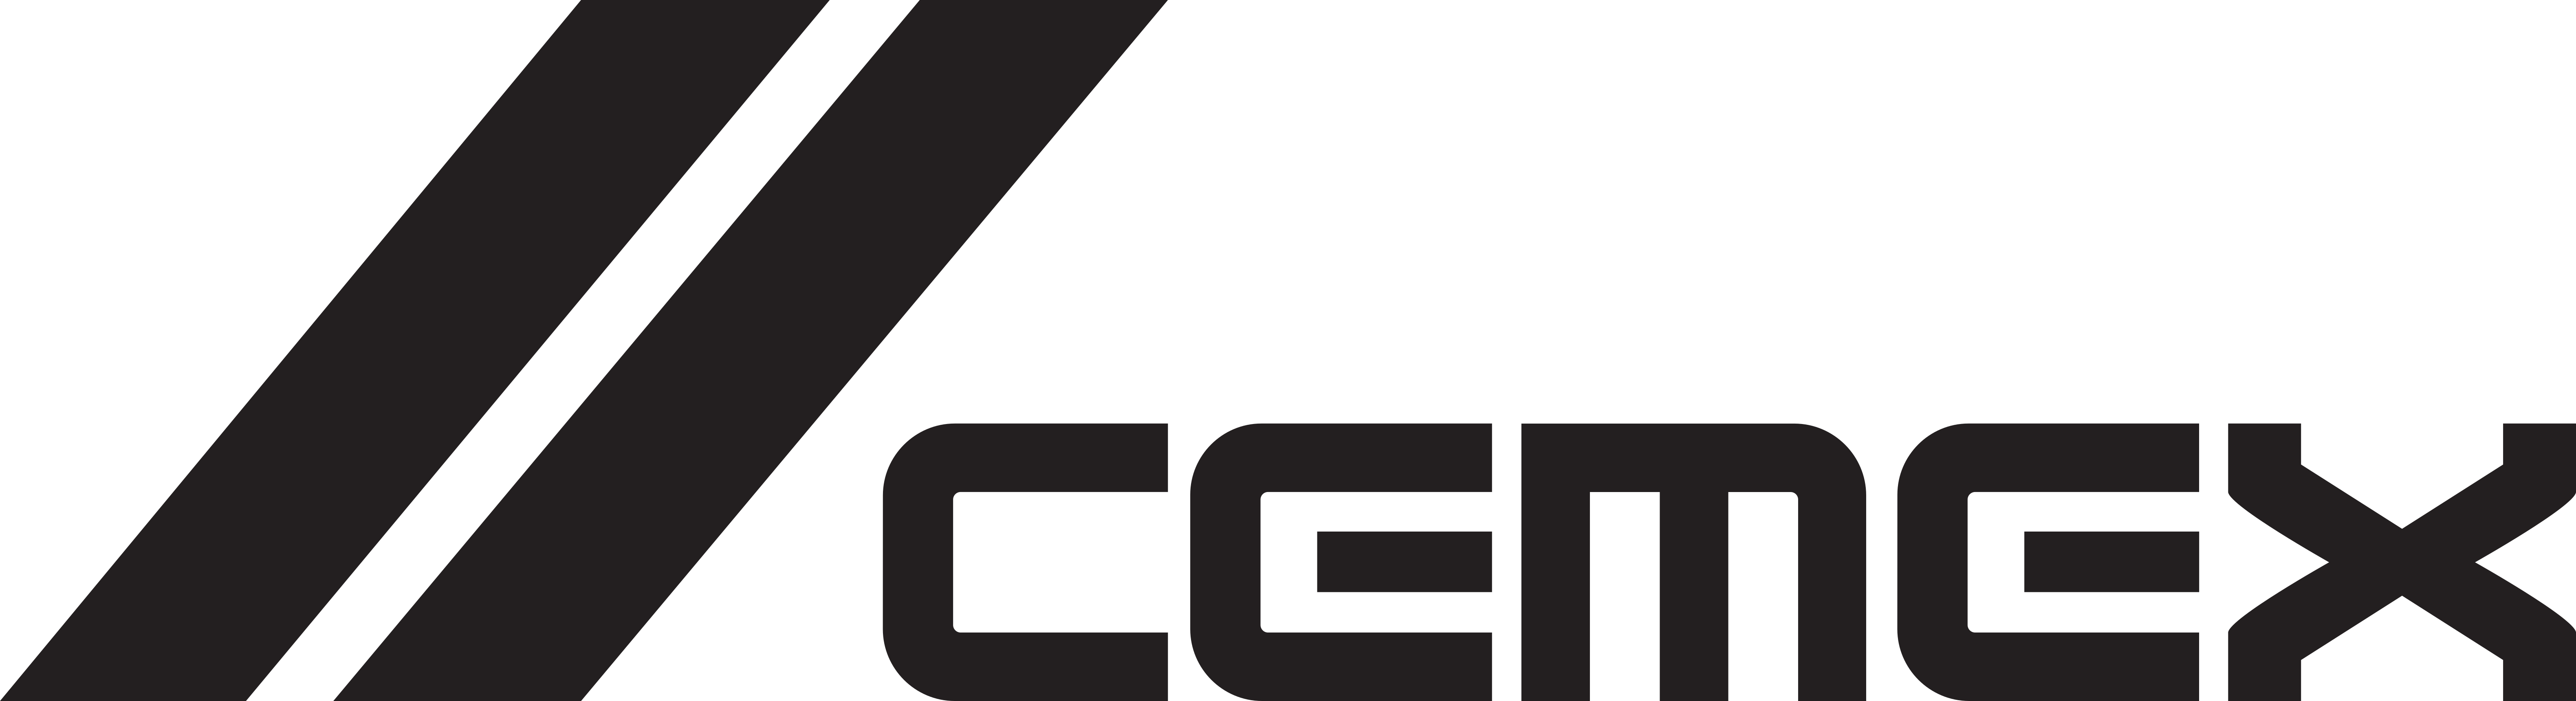 CEMEX Logo Schwarz.ai - Calaca e.V.